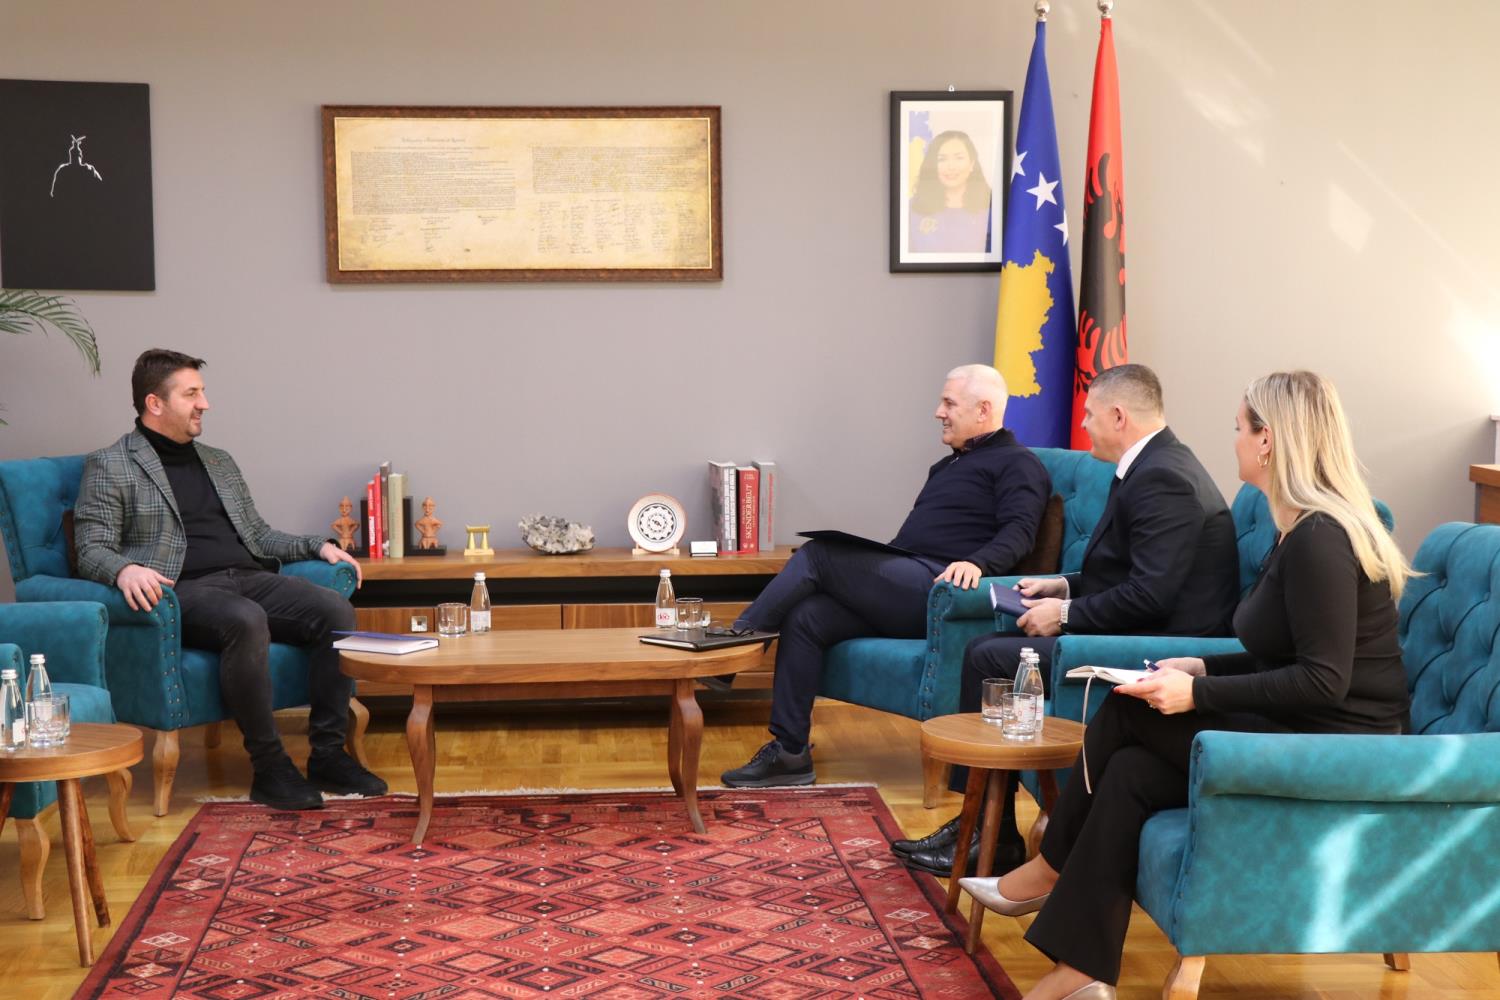 Ministri i Punëve të Brendshme Xhelal Sveçla priti në takim Drejtorin Ekzekutiv të Institutit të Krimeve të Kryera gjatë Luftës në Kosovë, Atdhe Hetemi